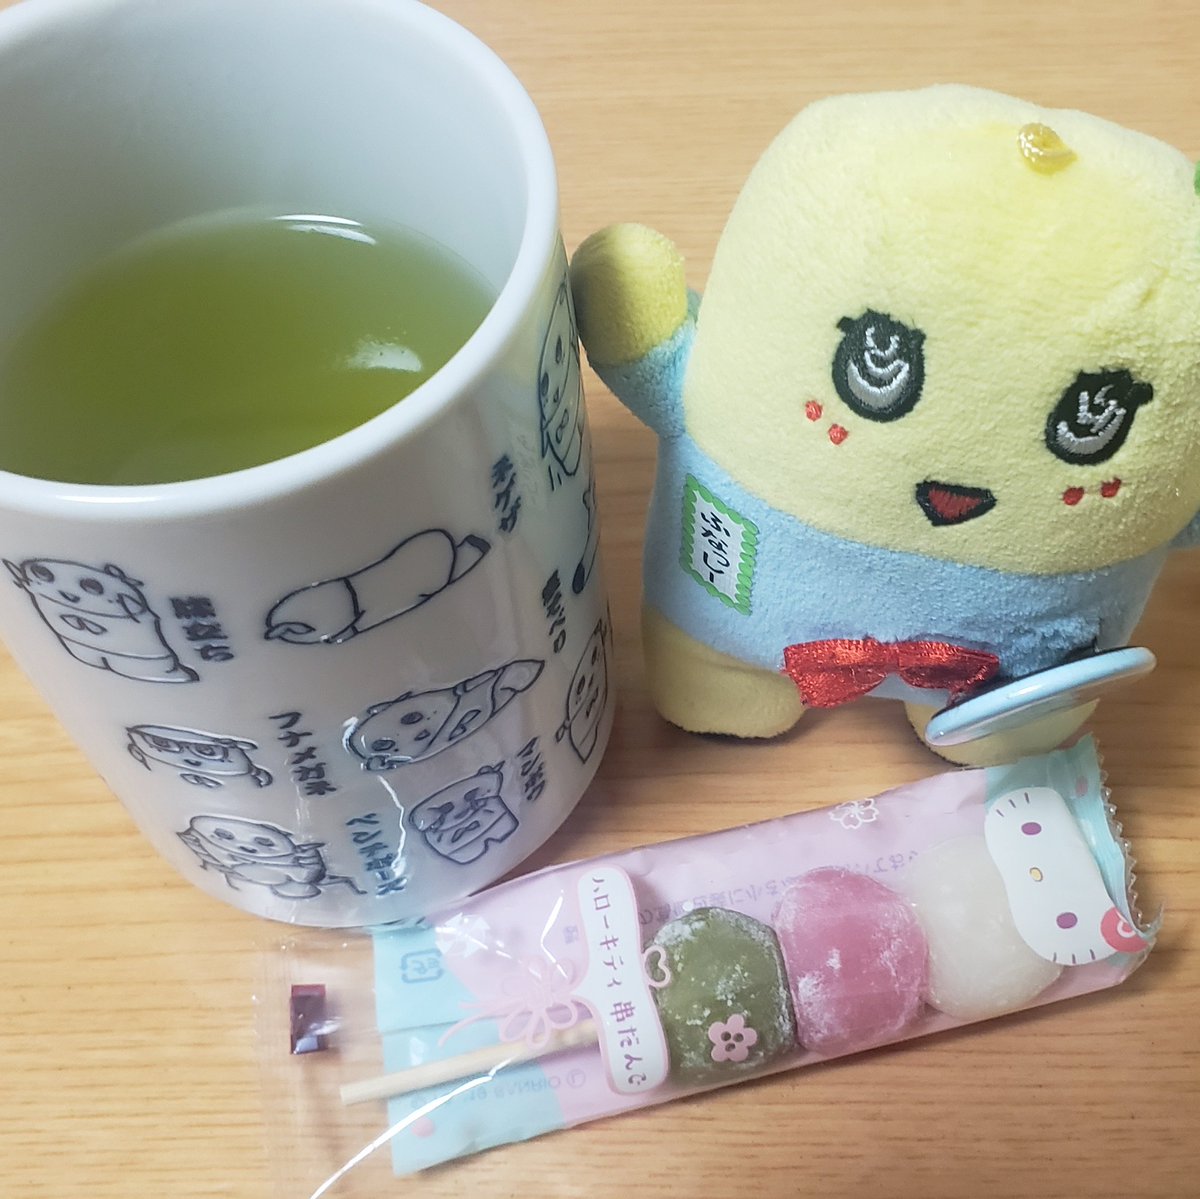 今日のお茶菓子は京都みやげのハローキティ3色だんごd('∀'*)